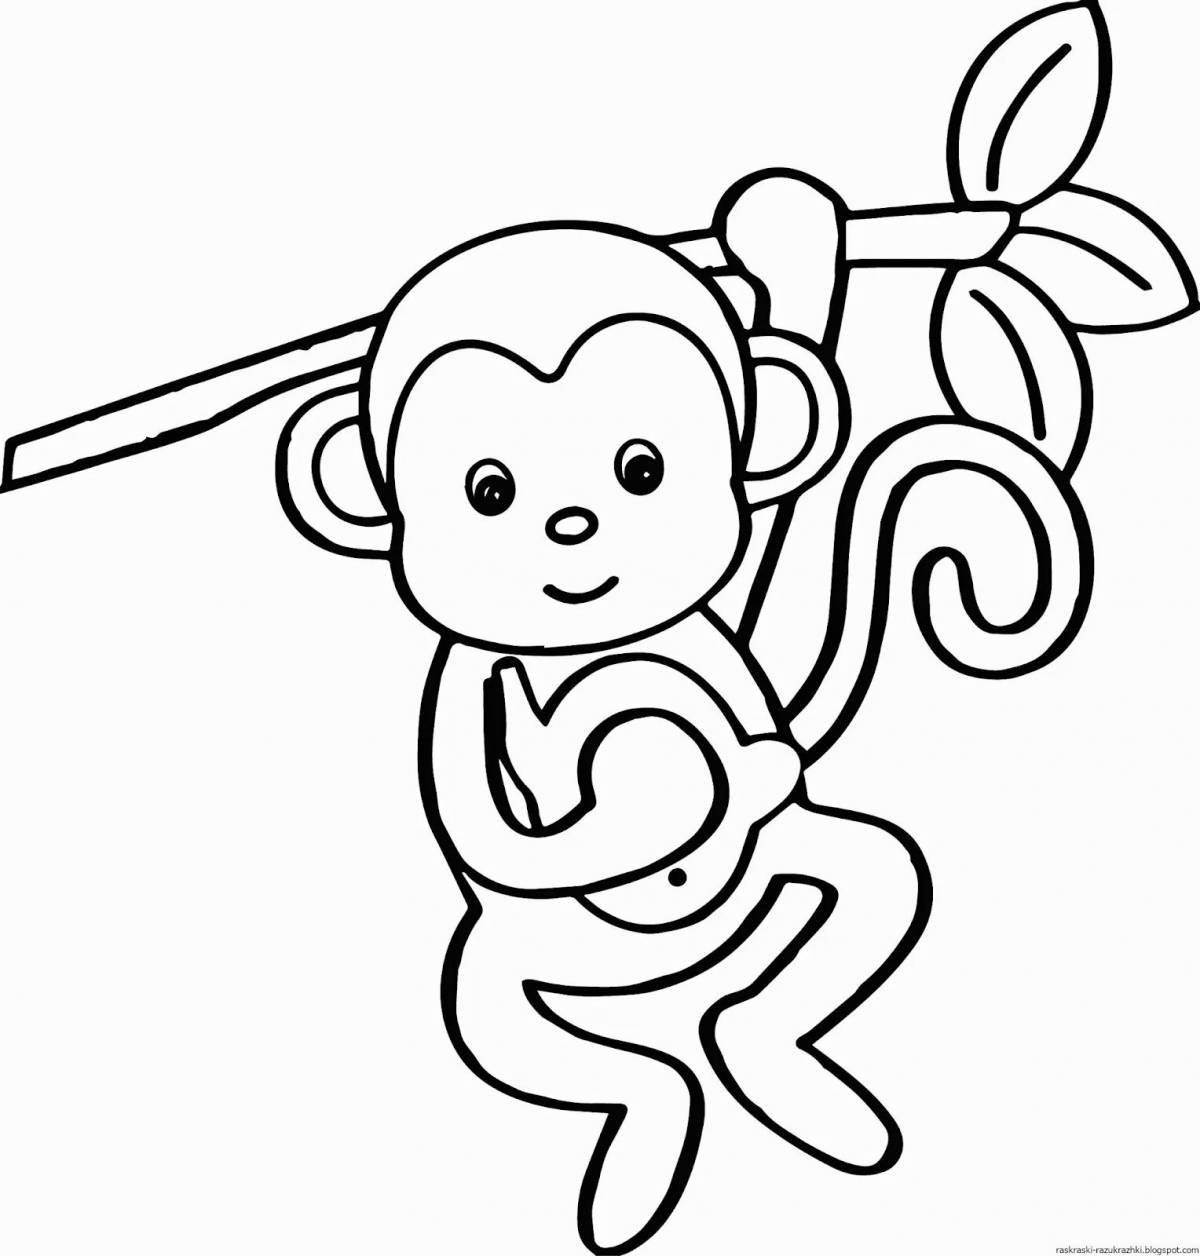 Прекрасный рисунок обезьяны для детей